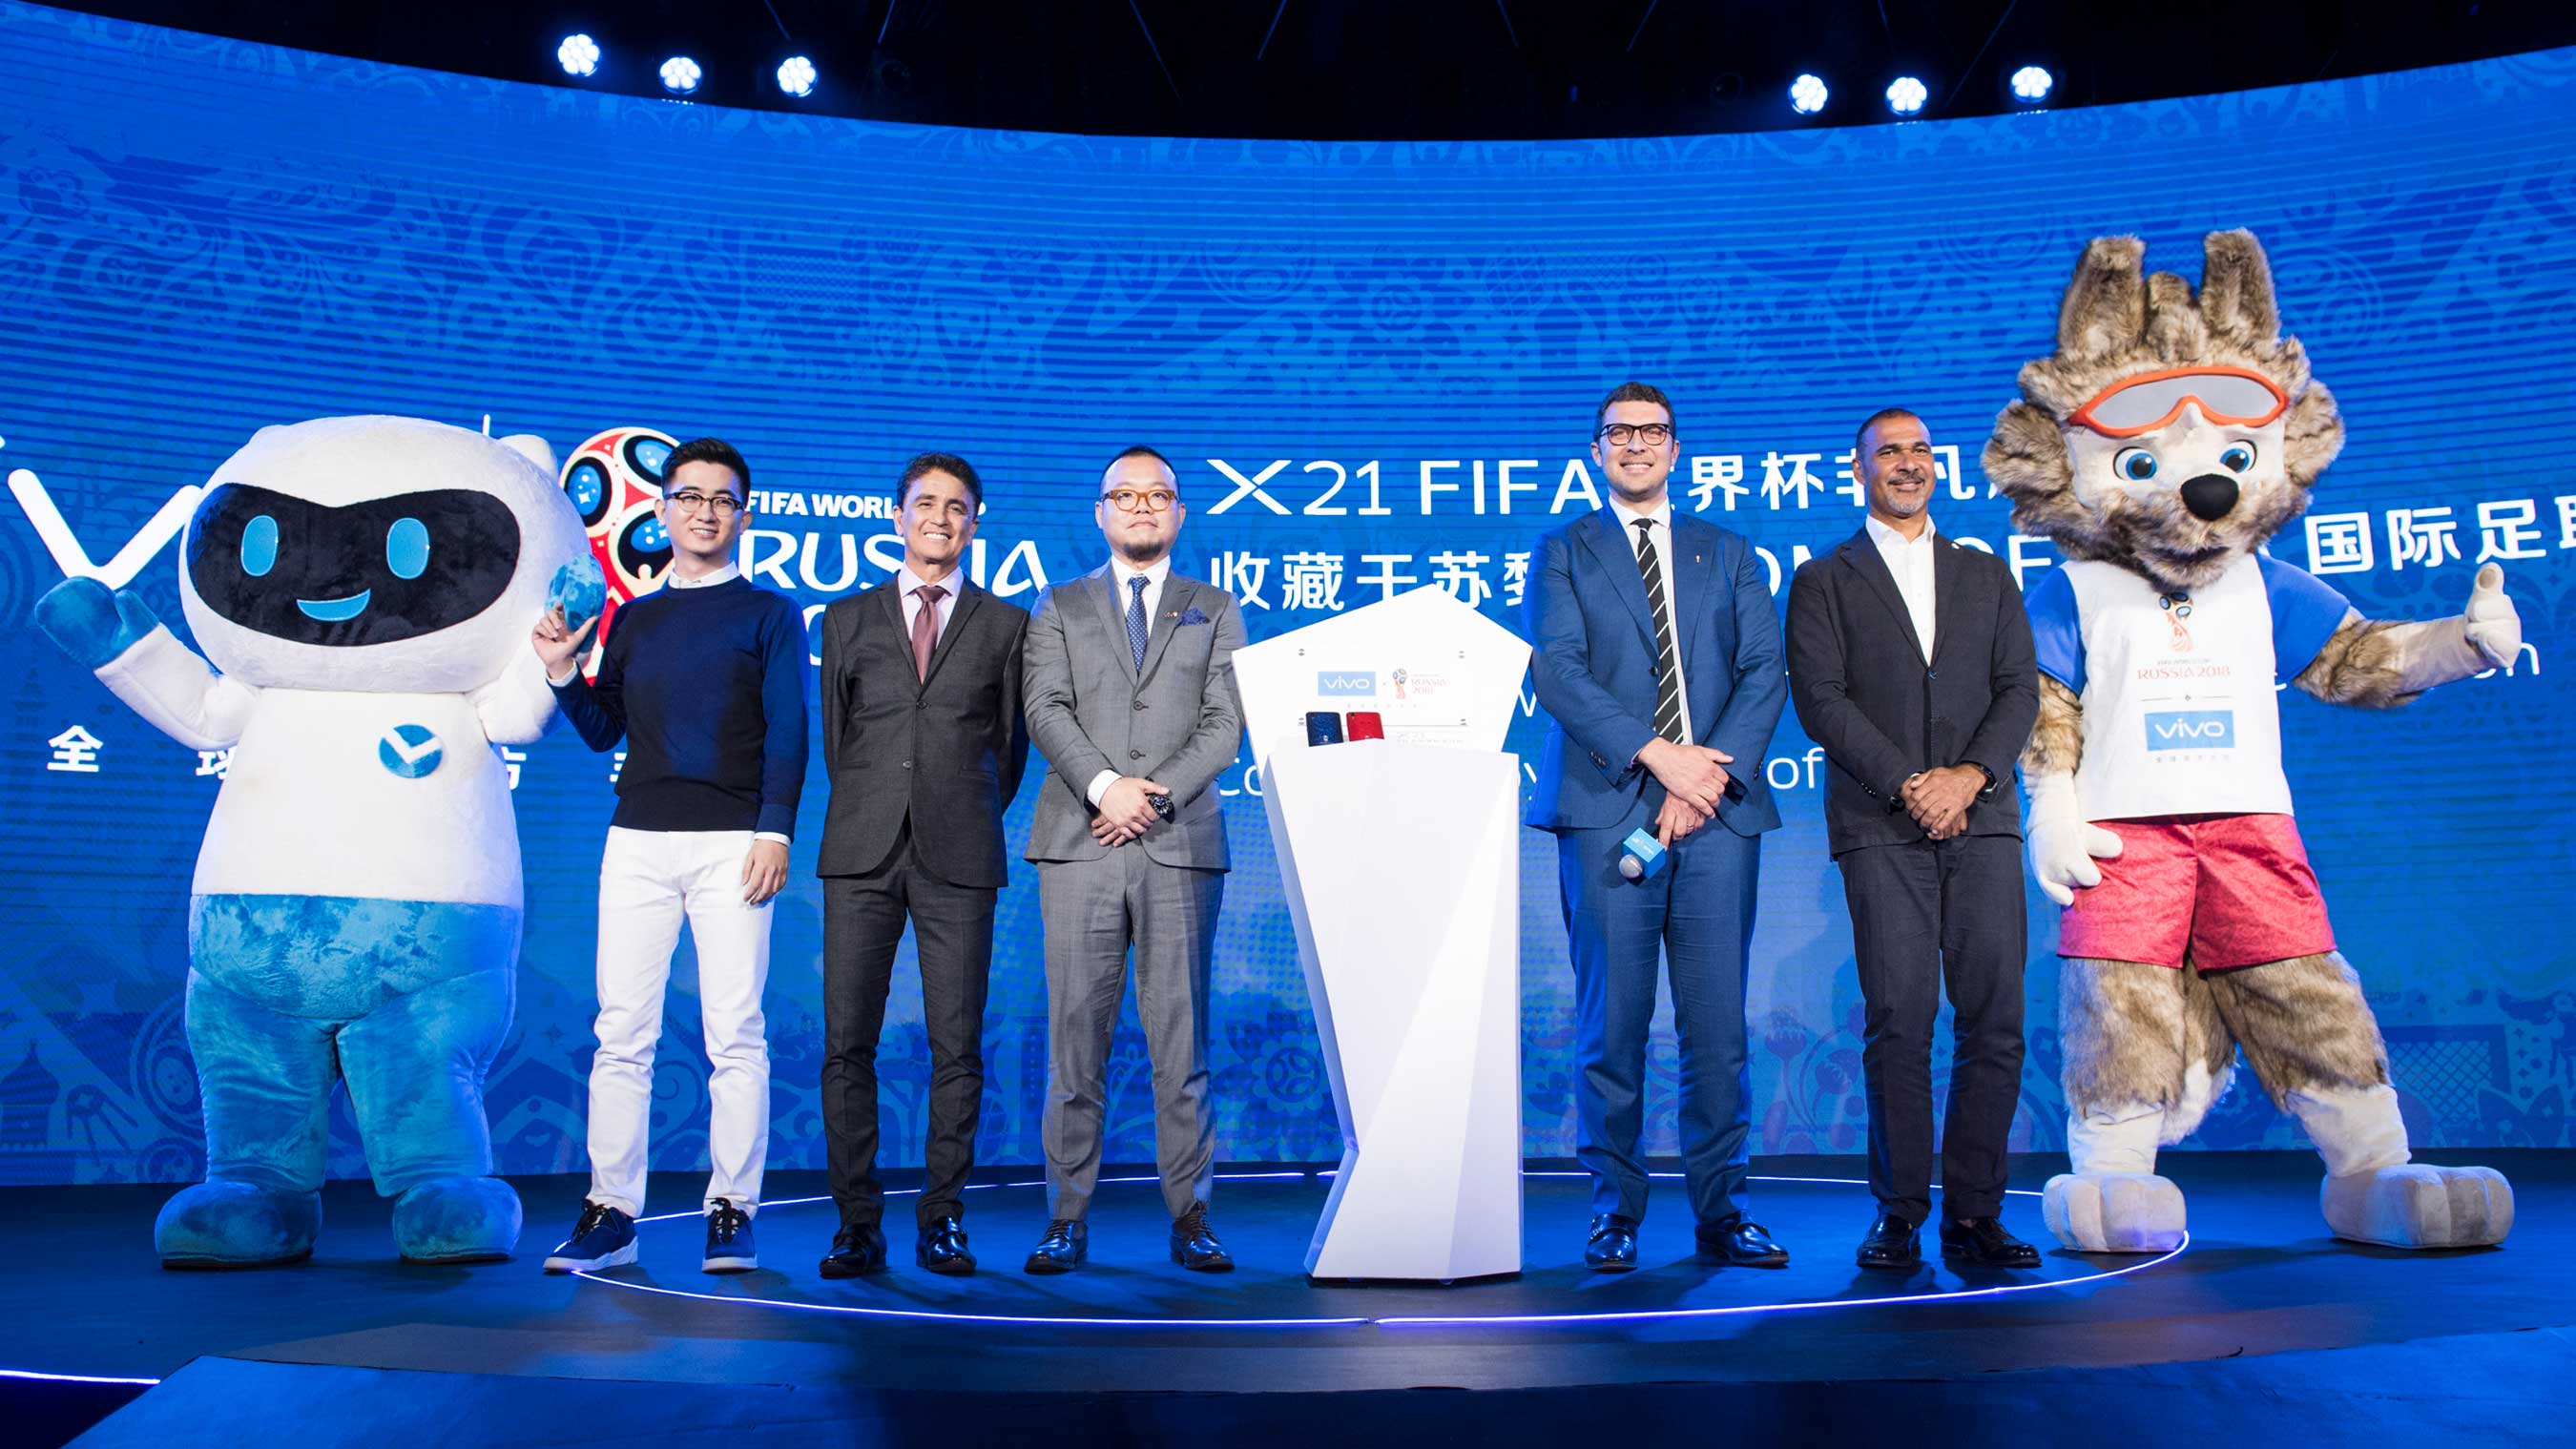 Vivo mascot and Zabivaka (FIFA World Cup mascot) join VIPs in commemorating Vivo smartphone entering the Home of FIFA